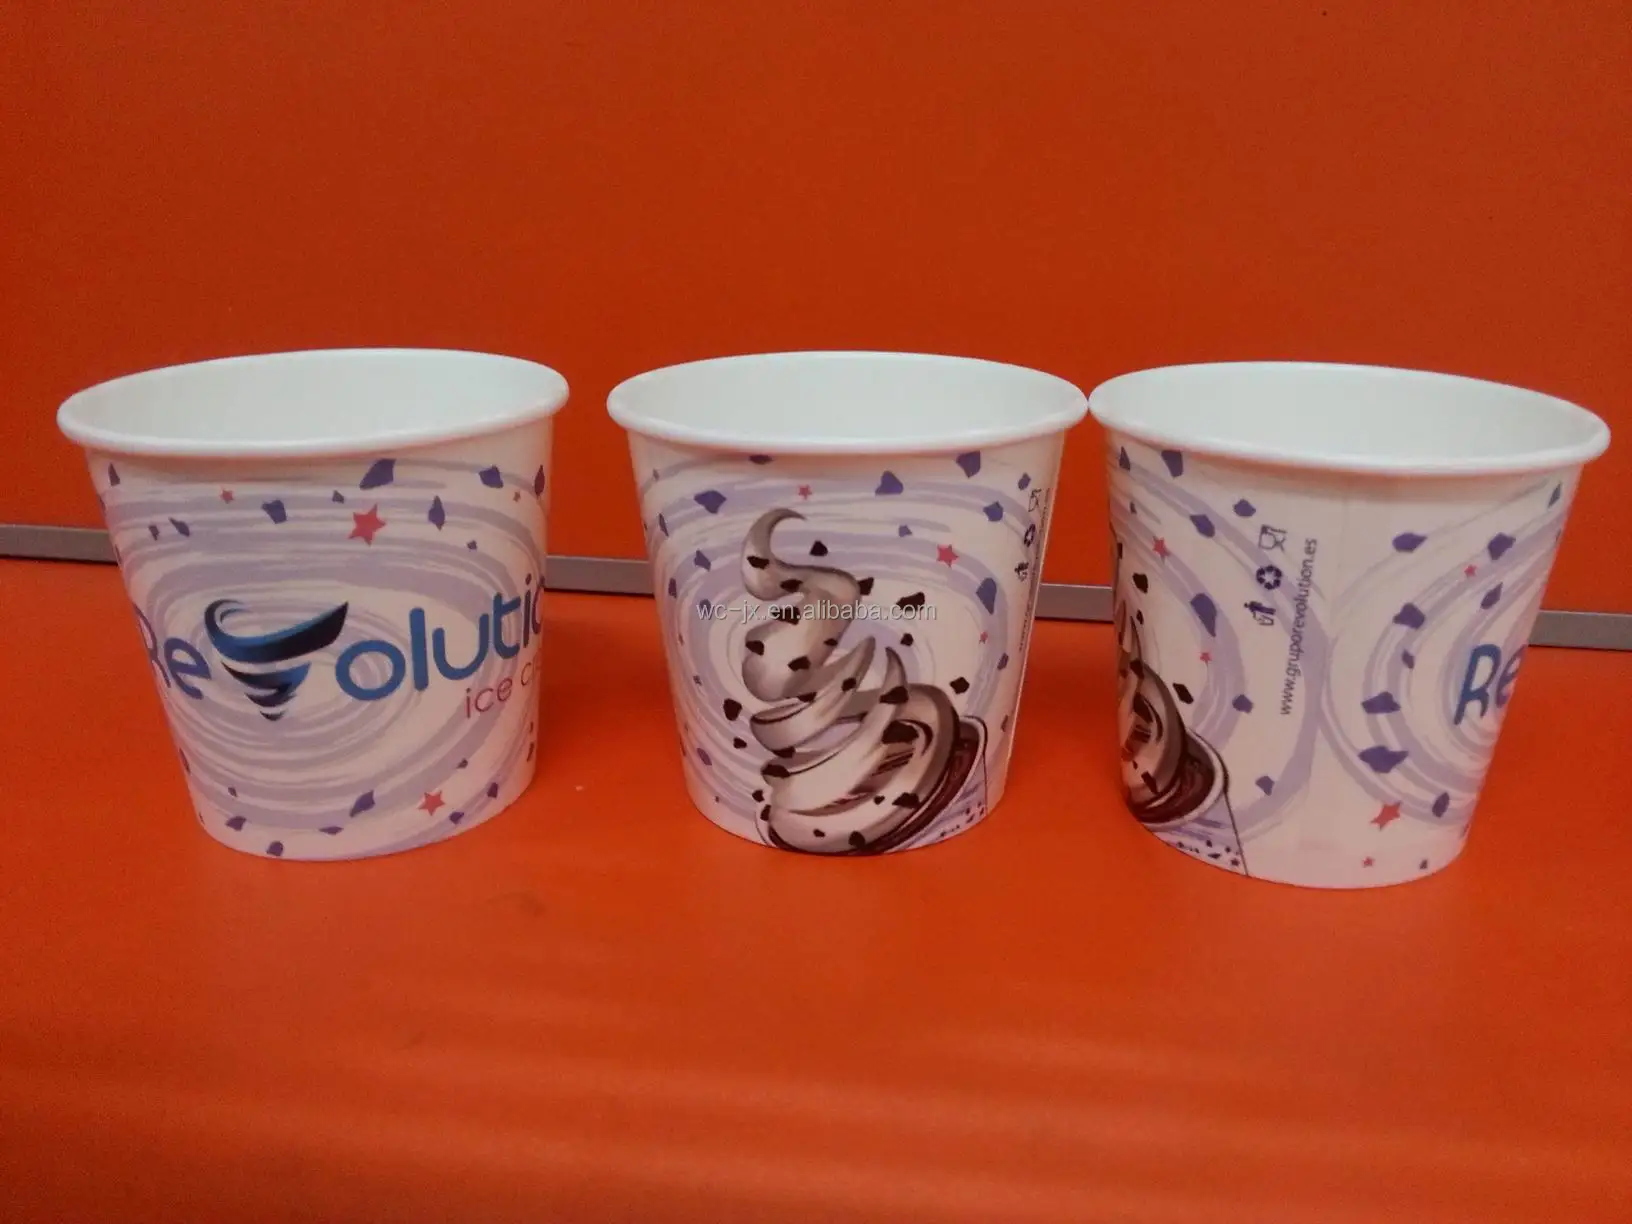 アイスクリームカップ アイスクリームペーパーカップ蓋付きスプーンをデザイン Buy アイスクリーム紙コップ 使い捨てアイスクリームカップ Plaスプーン Product On Alibaba Com